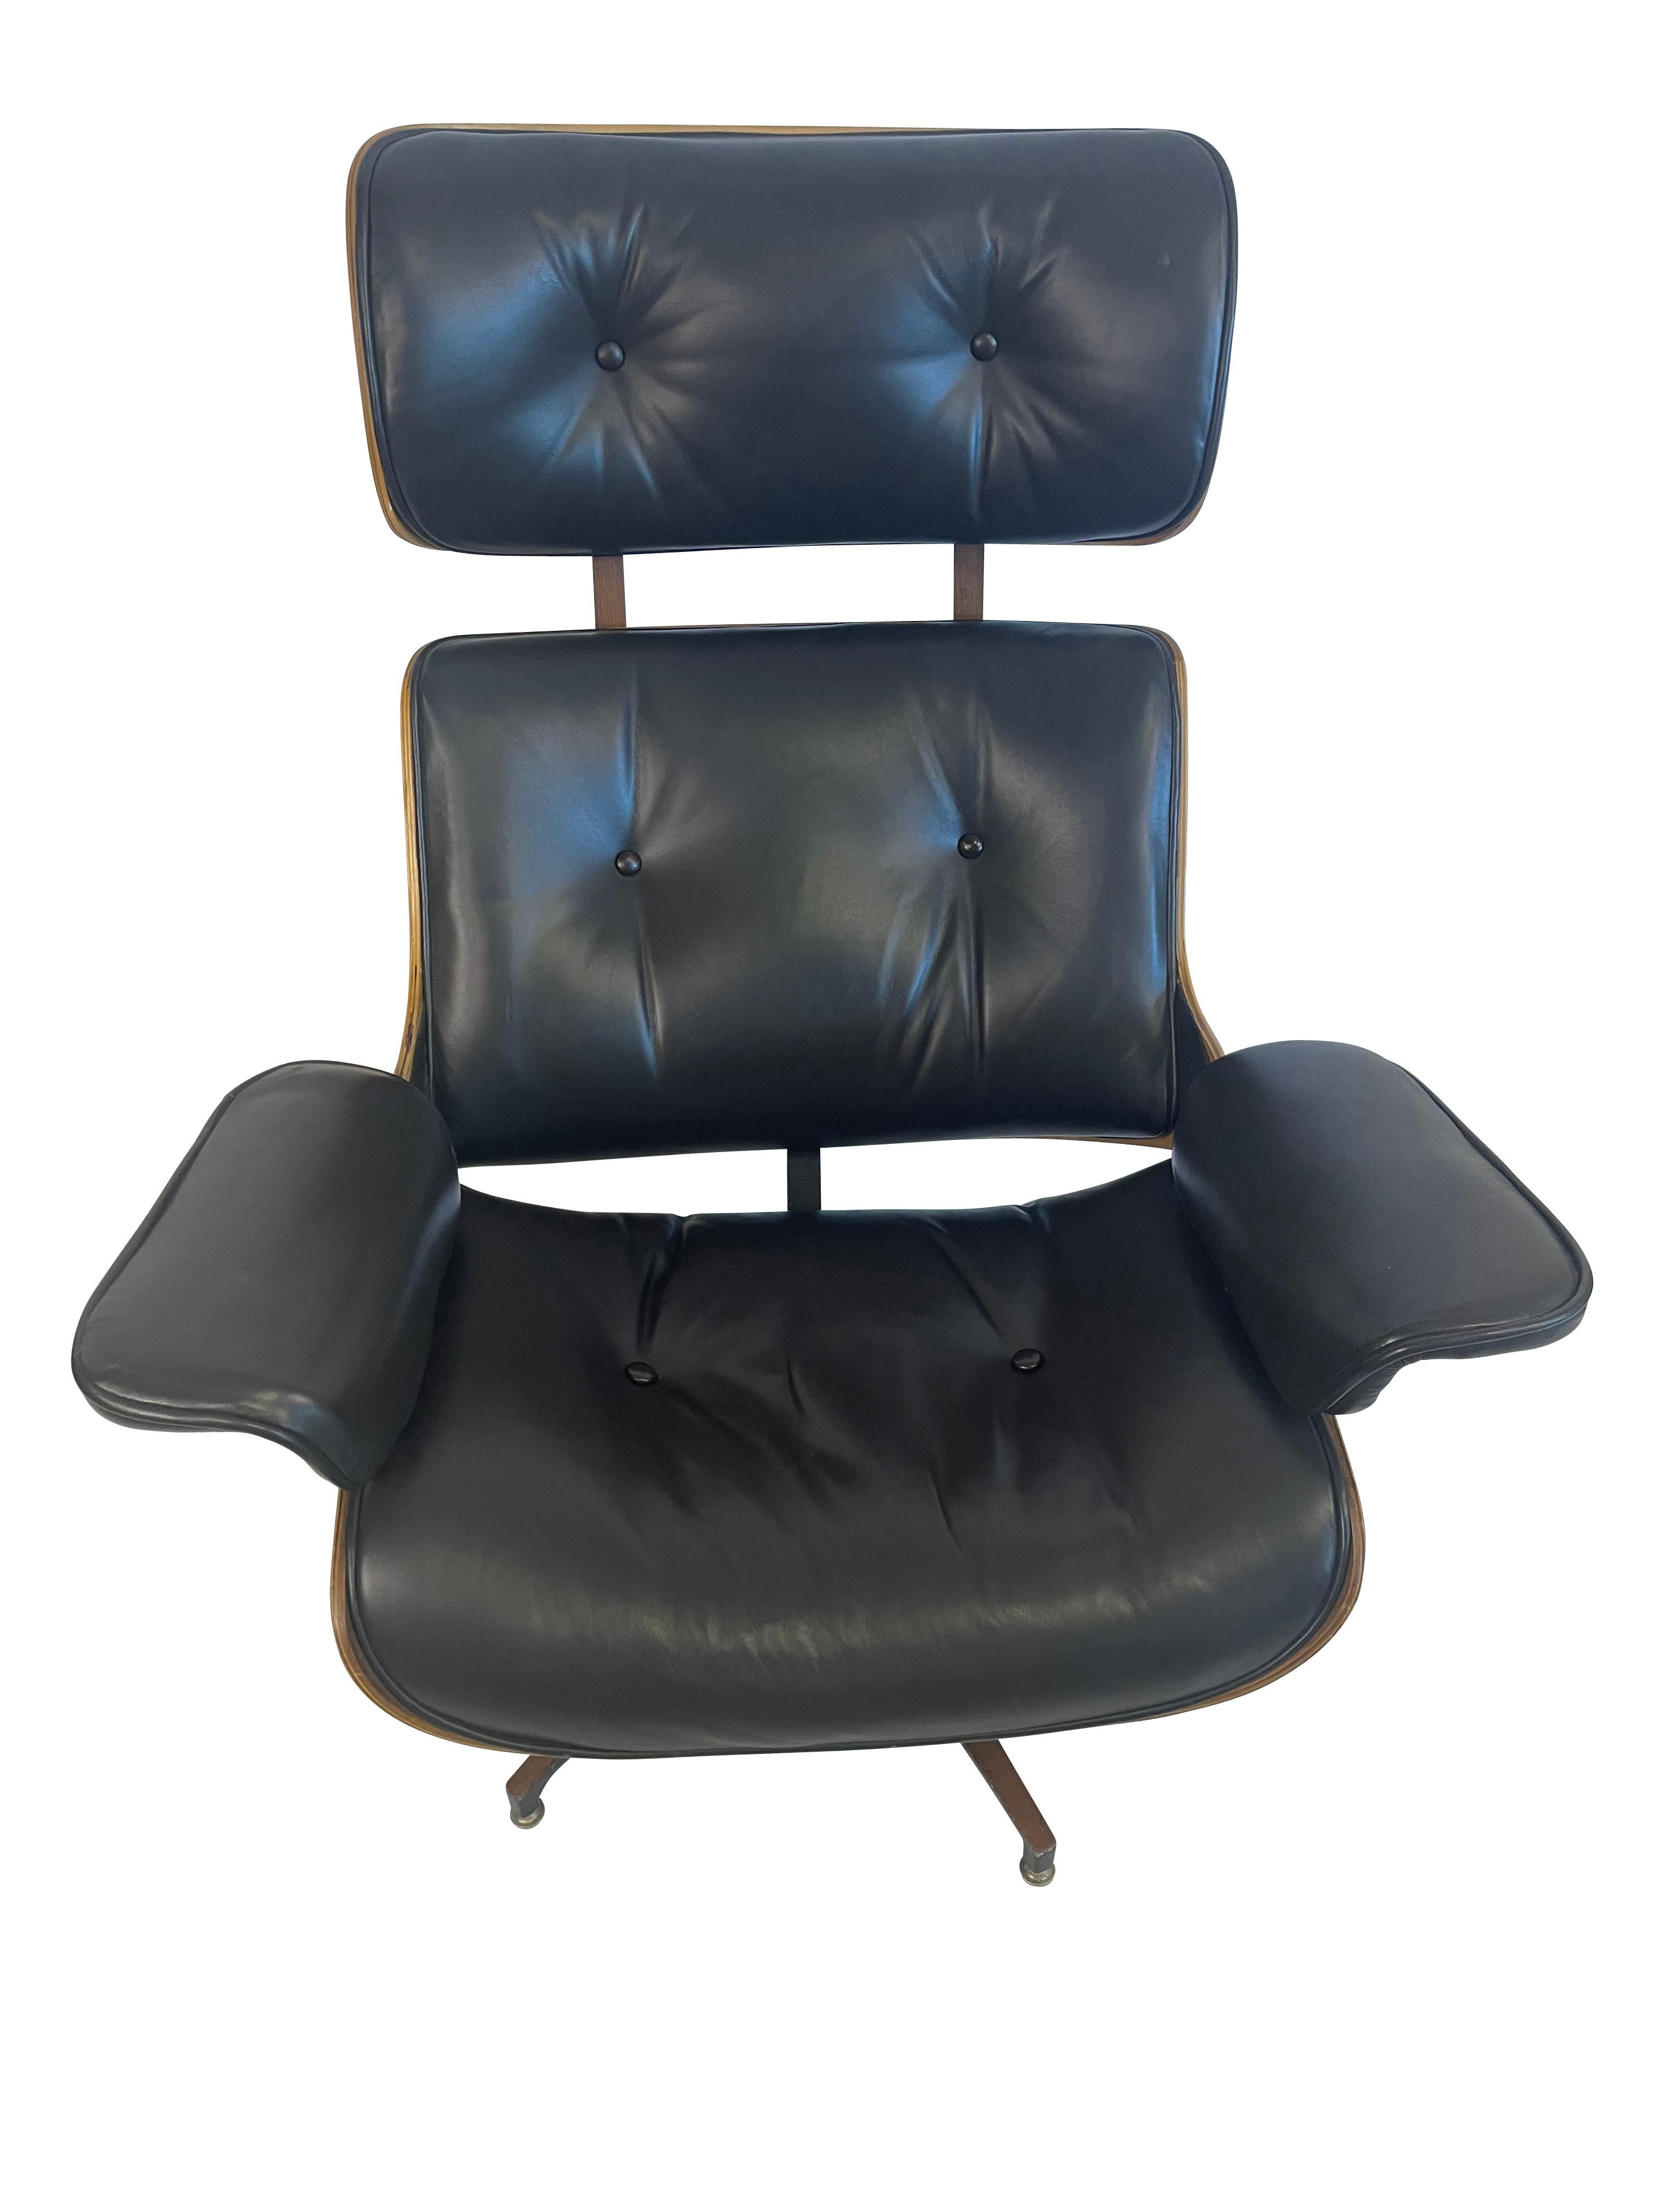 George Mulhauser a conçu des chaises longues et des ottomans en noyer et en cuir italien Plycraft, des chaises longues pivotantes et inclinables en contreplaqué stratifié plié, ainsi que des ottomans dans le style des Eames. Ils sont en excellent